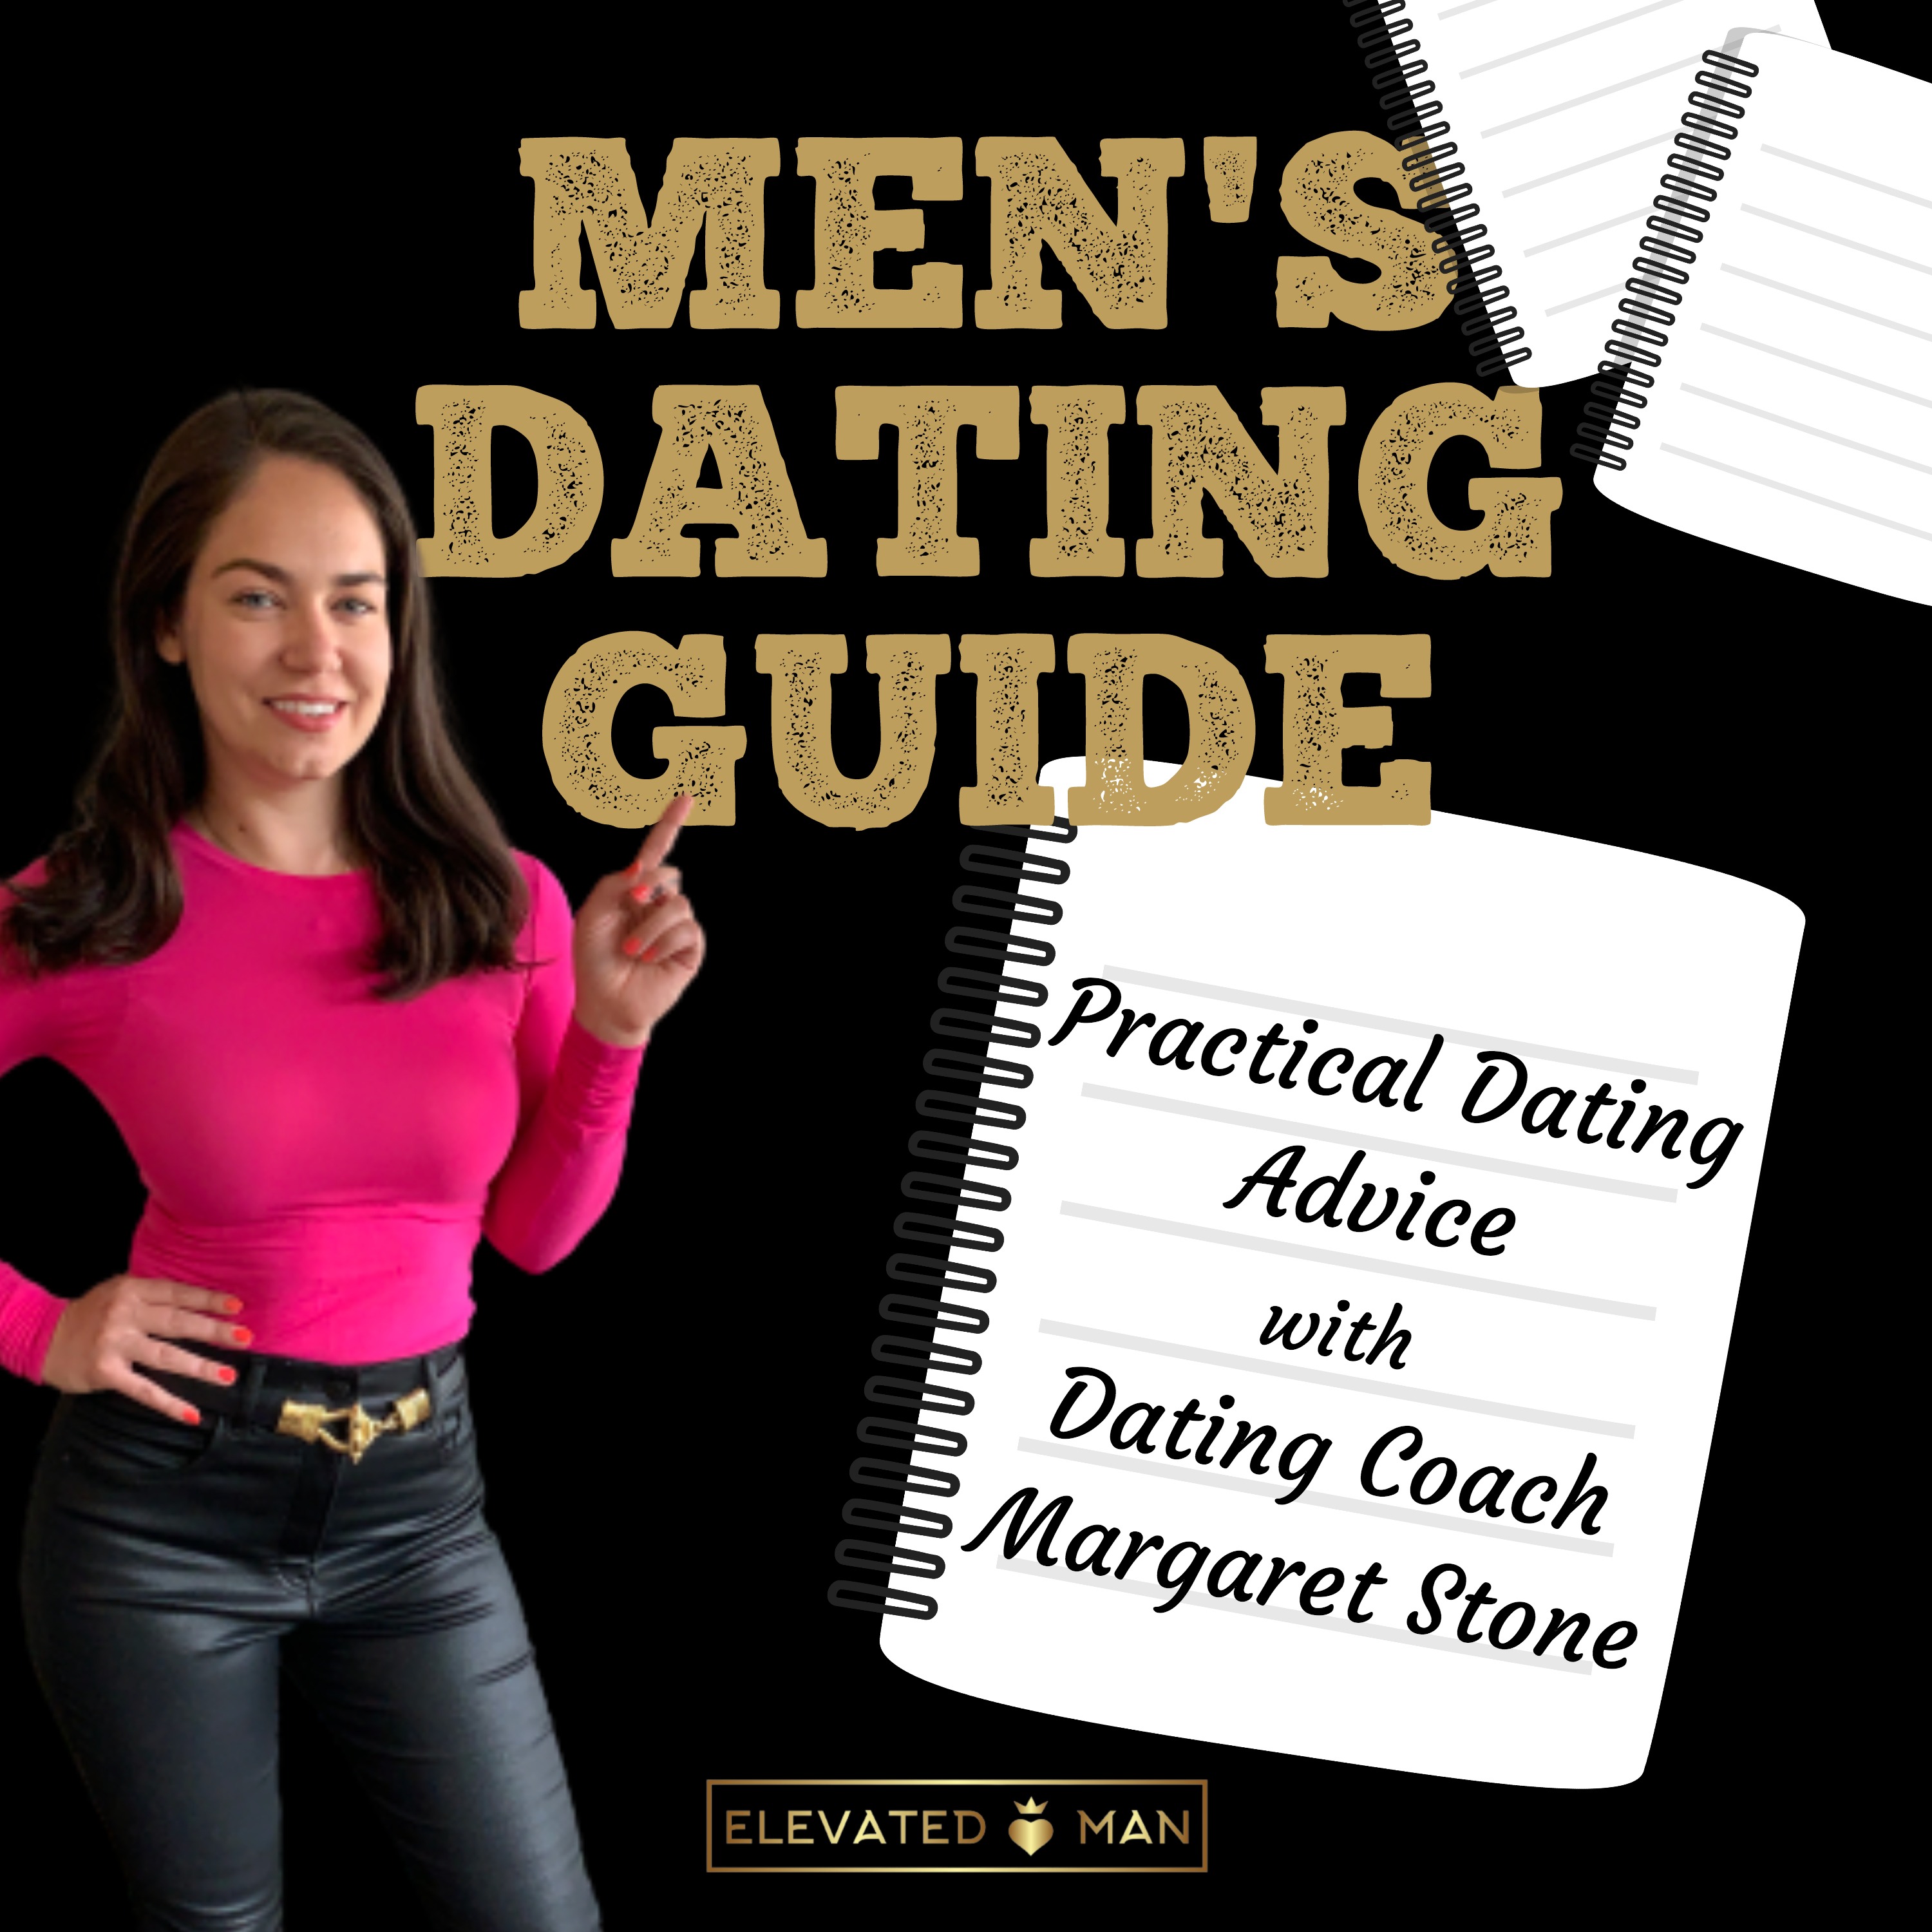 ru Fremskreden Stolpe Men's Dating Guide